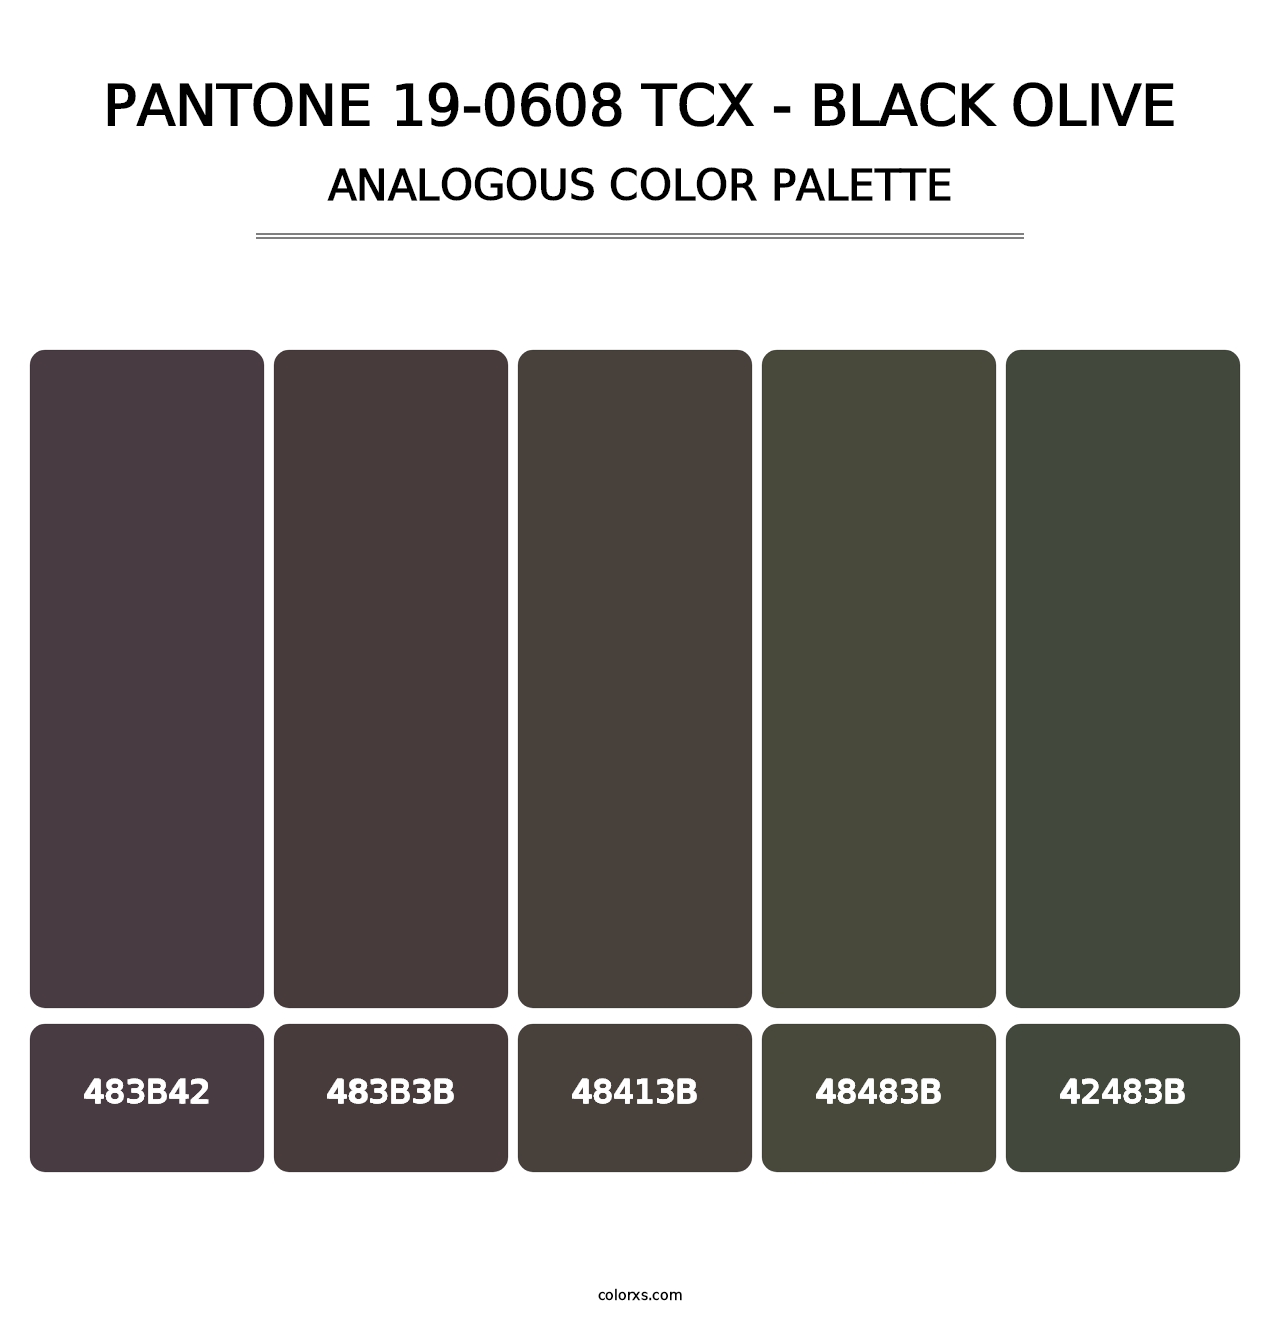 PANTONE 19-0608 TCX - Black Olive - Analogous Color Palette